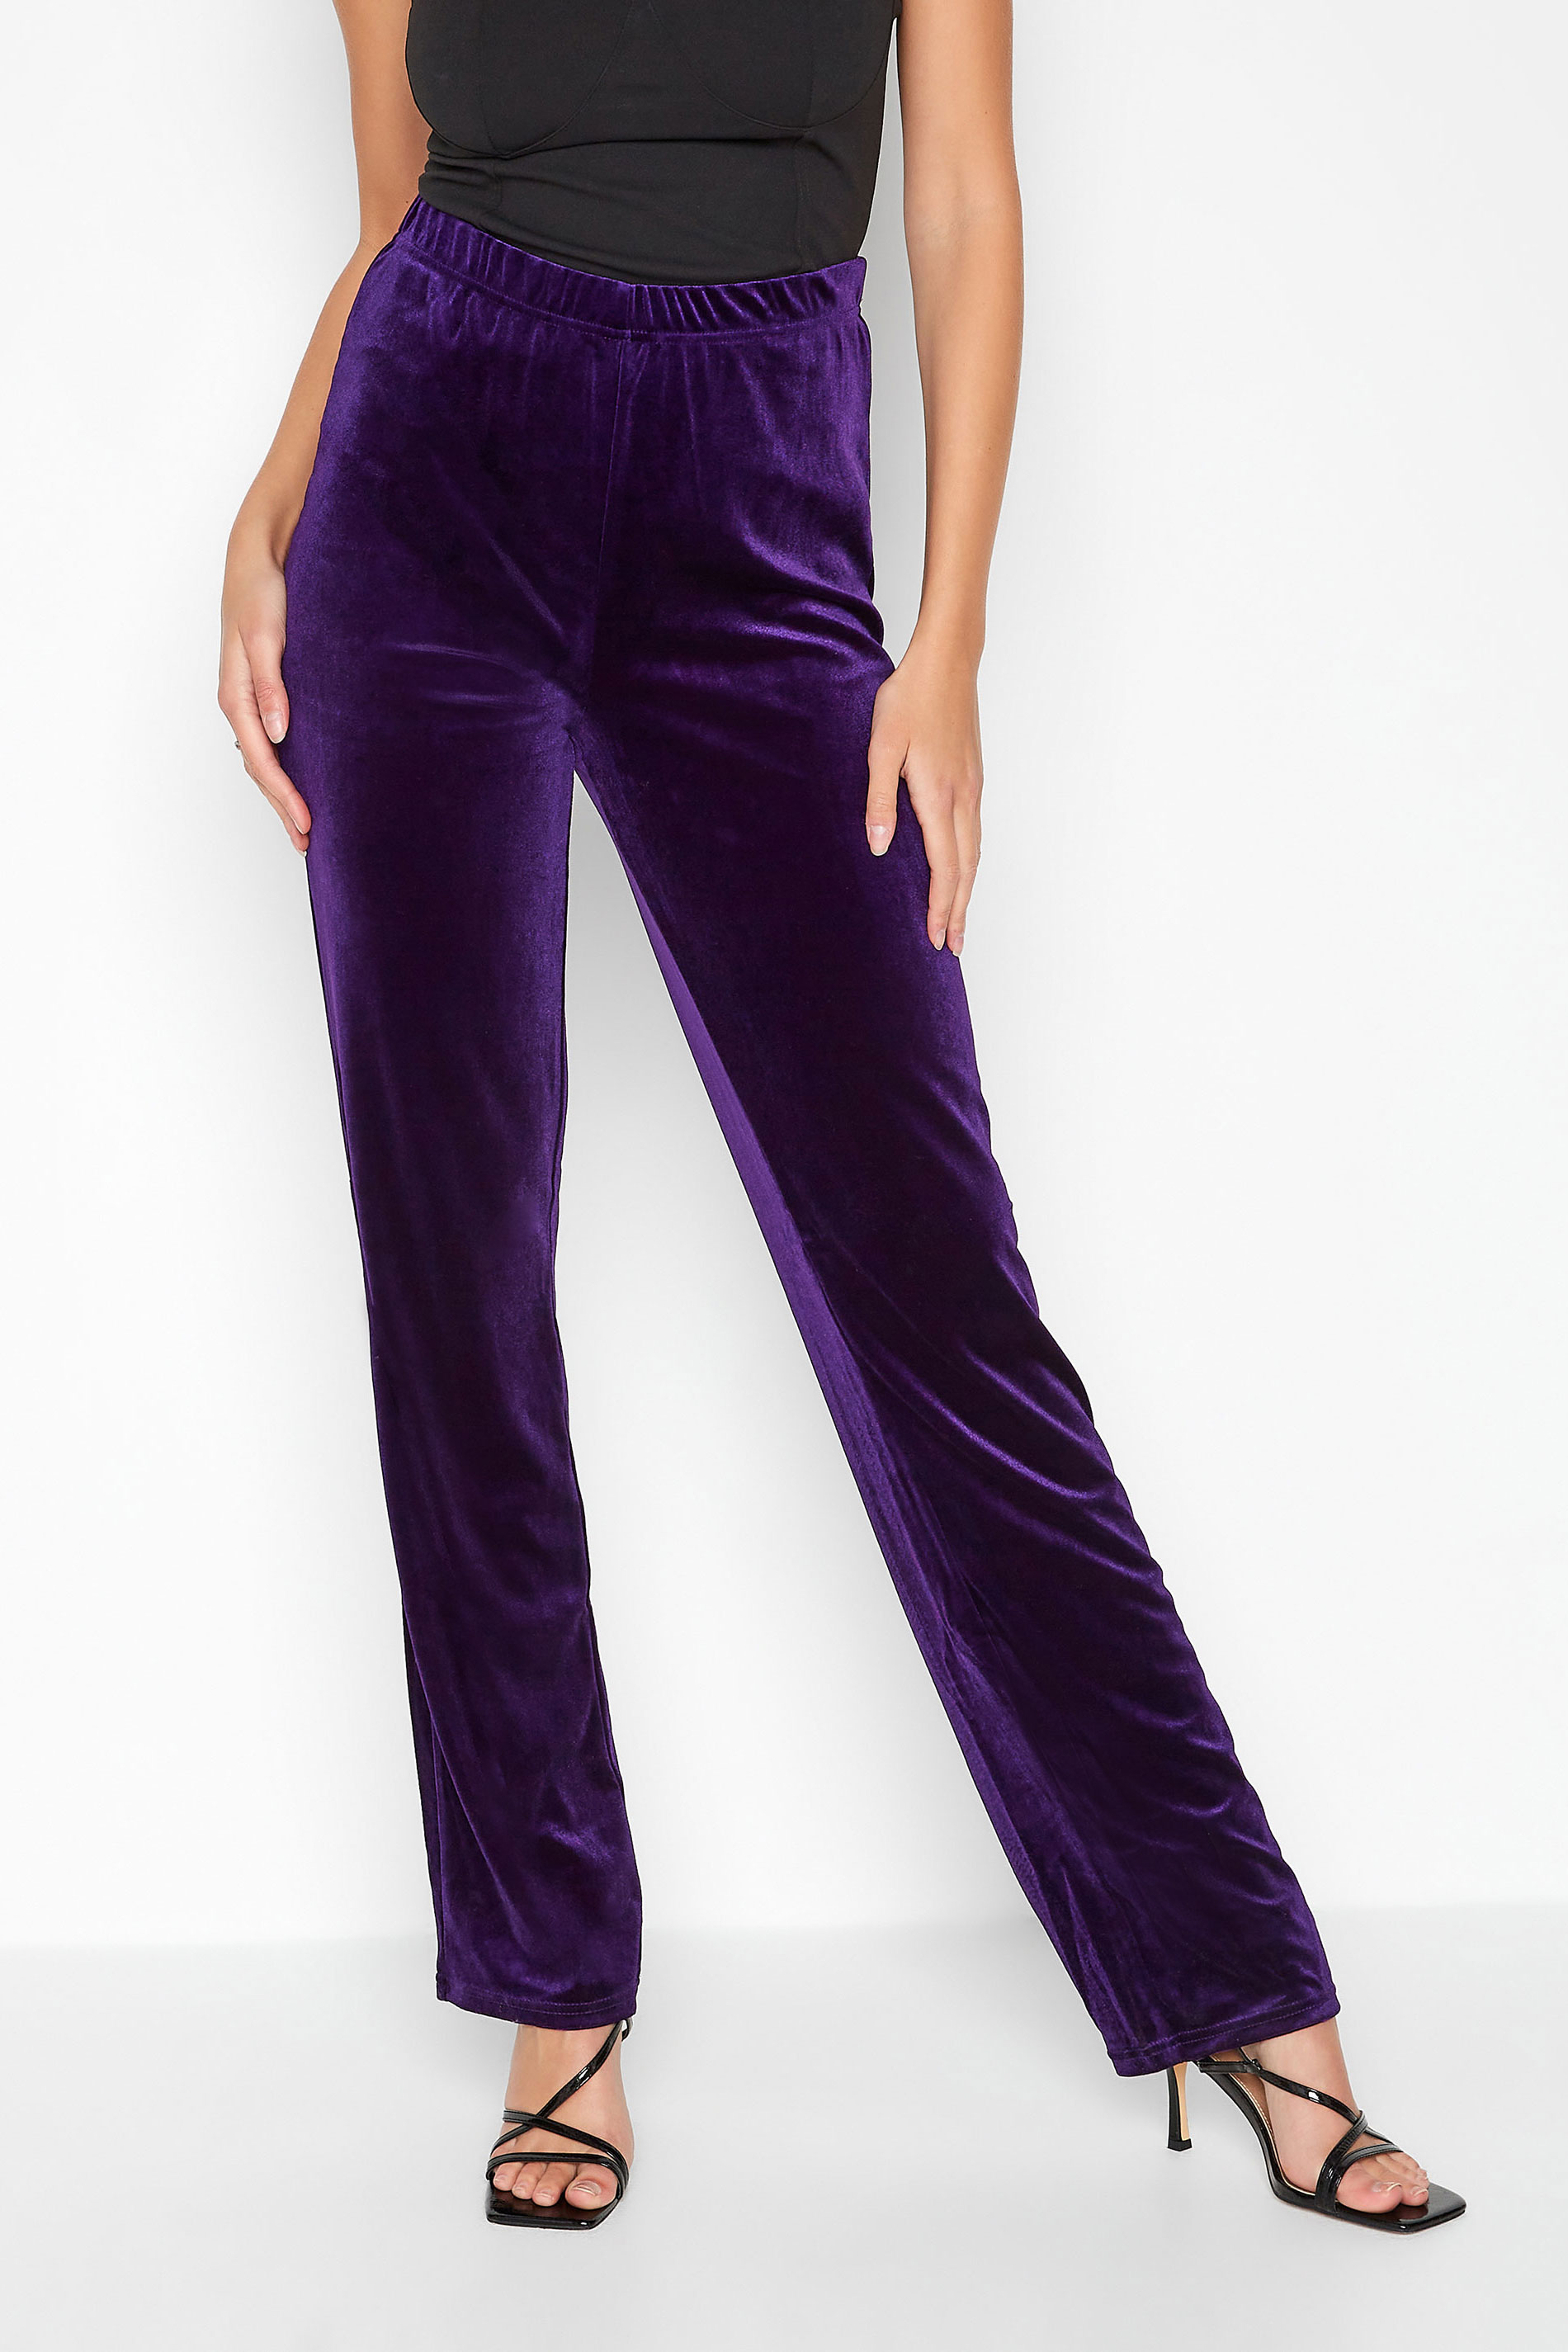 ZARA Women's Purple Velvet Trousers Pants High Waisted Split Leg Hem Size  Small | eBay